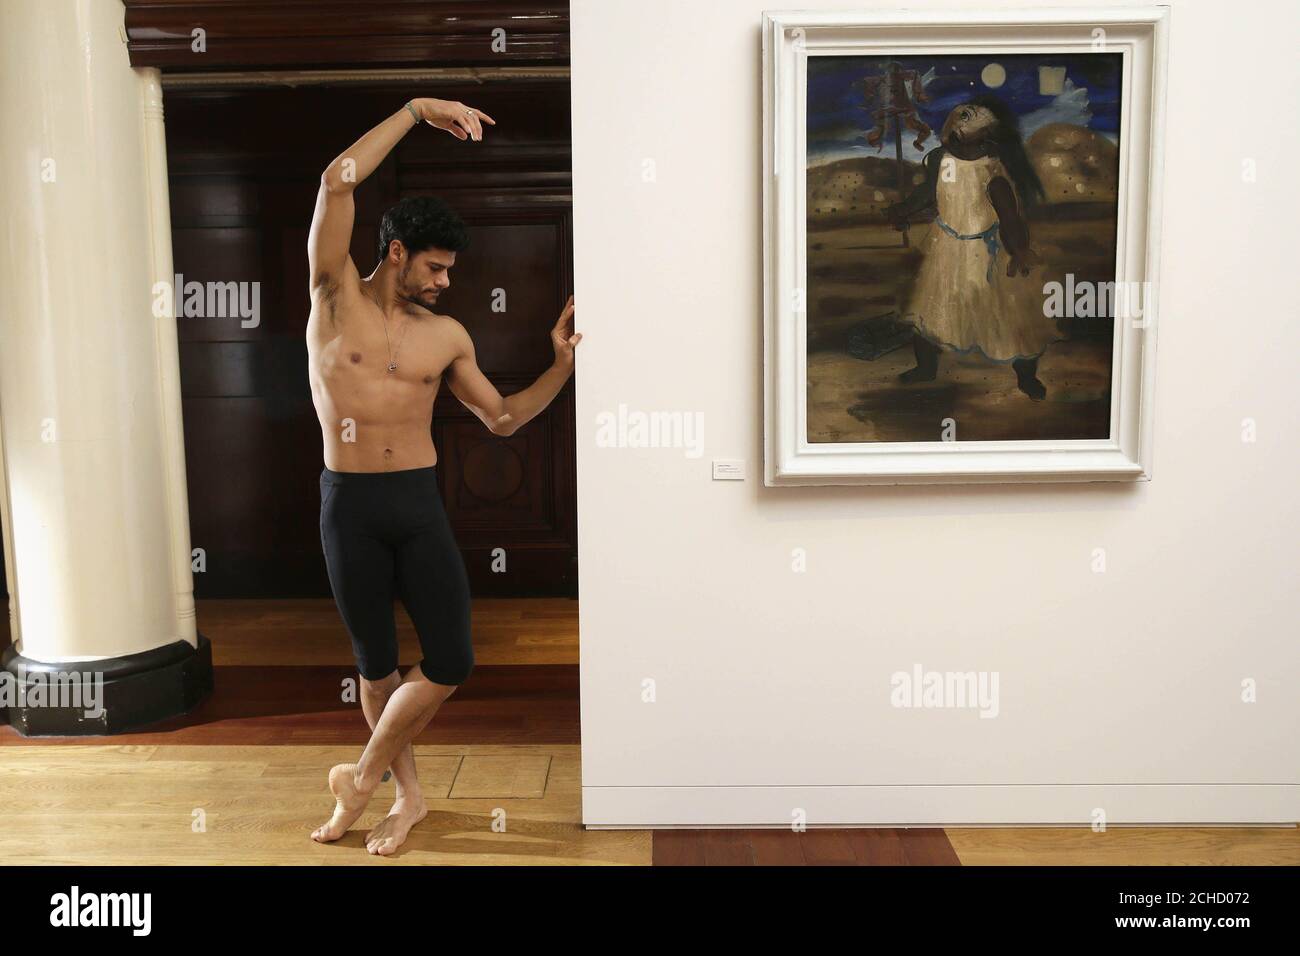 REDAKTIONELLE VERWENDUNG NUR Royal Ballet's brasilianische Principal Dancer Thiago Soares sieht die Kunst der Diplomatie: Brasilianische Moderne Painted for war, im Sala Brasil Arts Centre, in der Botschaft von Brasilien in London. Stockfoto